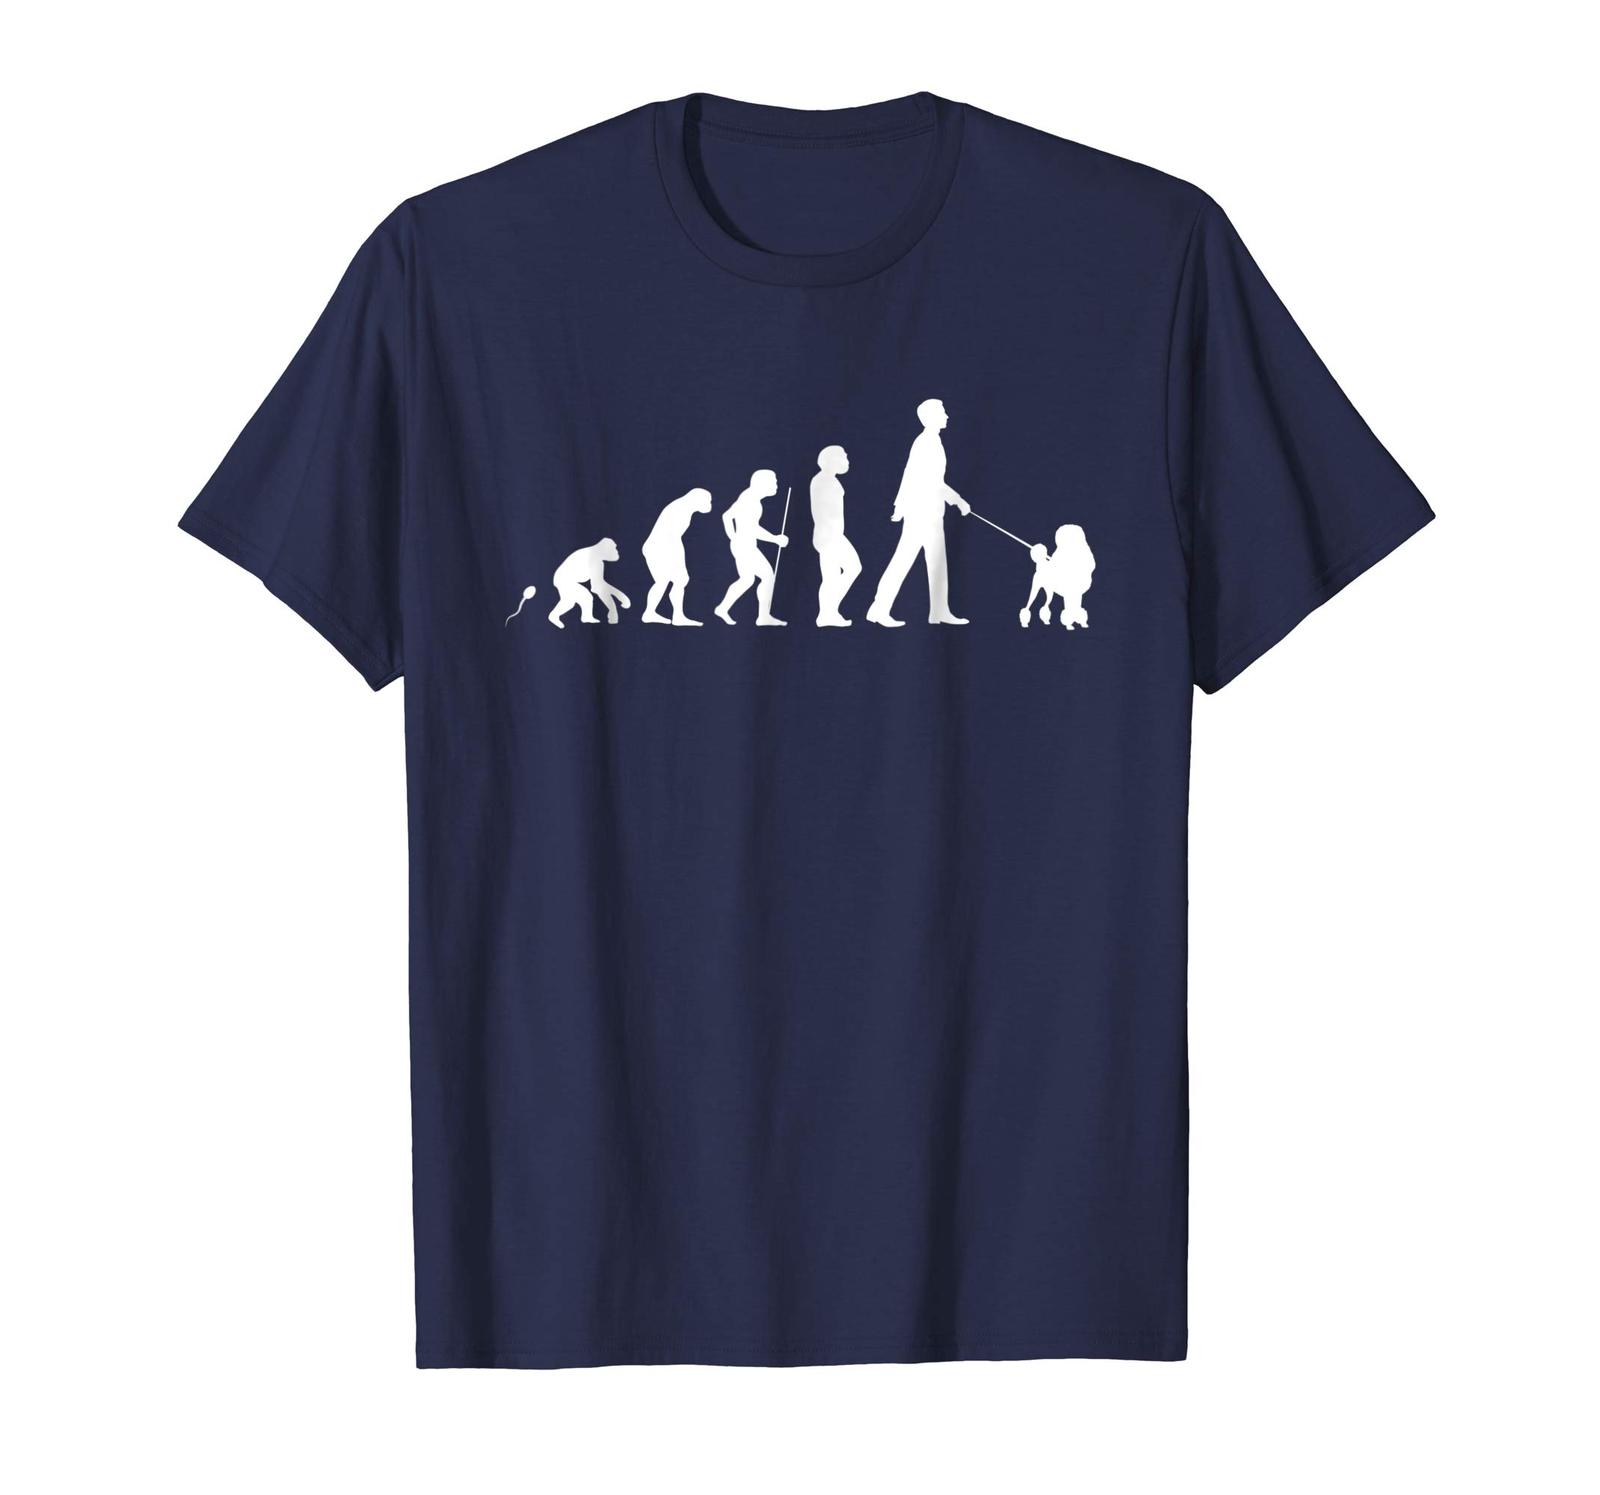 Dog Fashion - Poodle Tee Shirt Gift for Men Women & Kids Men